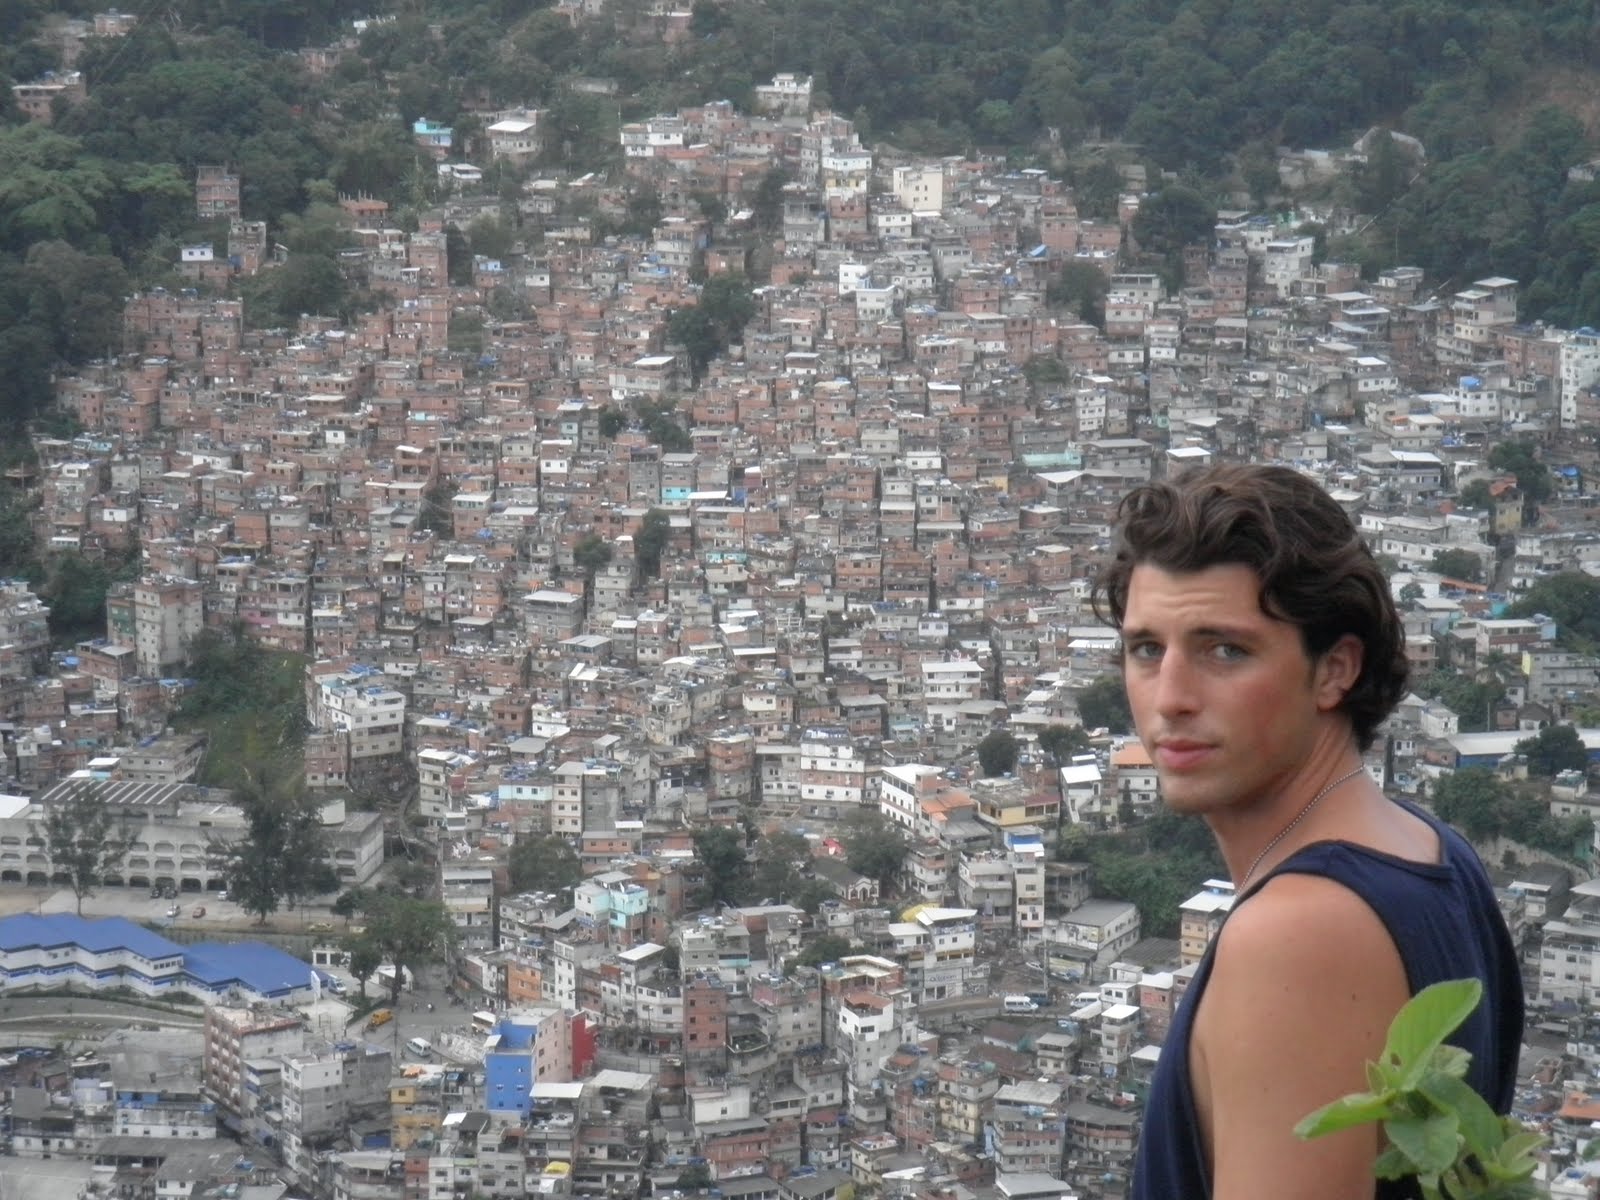 Life in Favela of Rocinha, Rio de Janeiro, Brazil April 2011